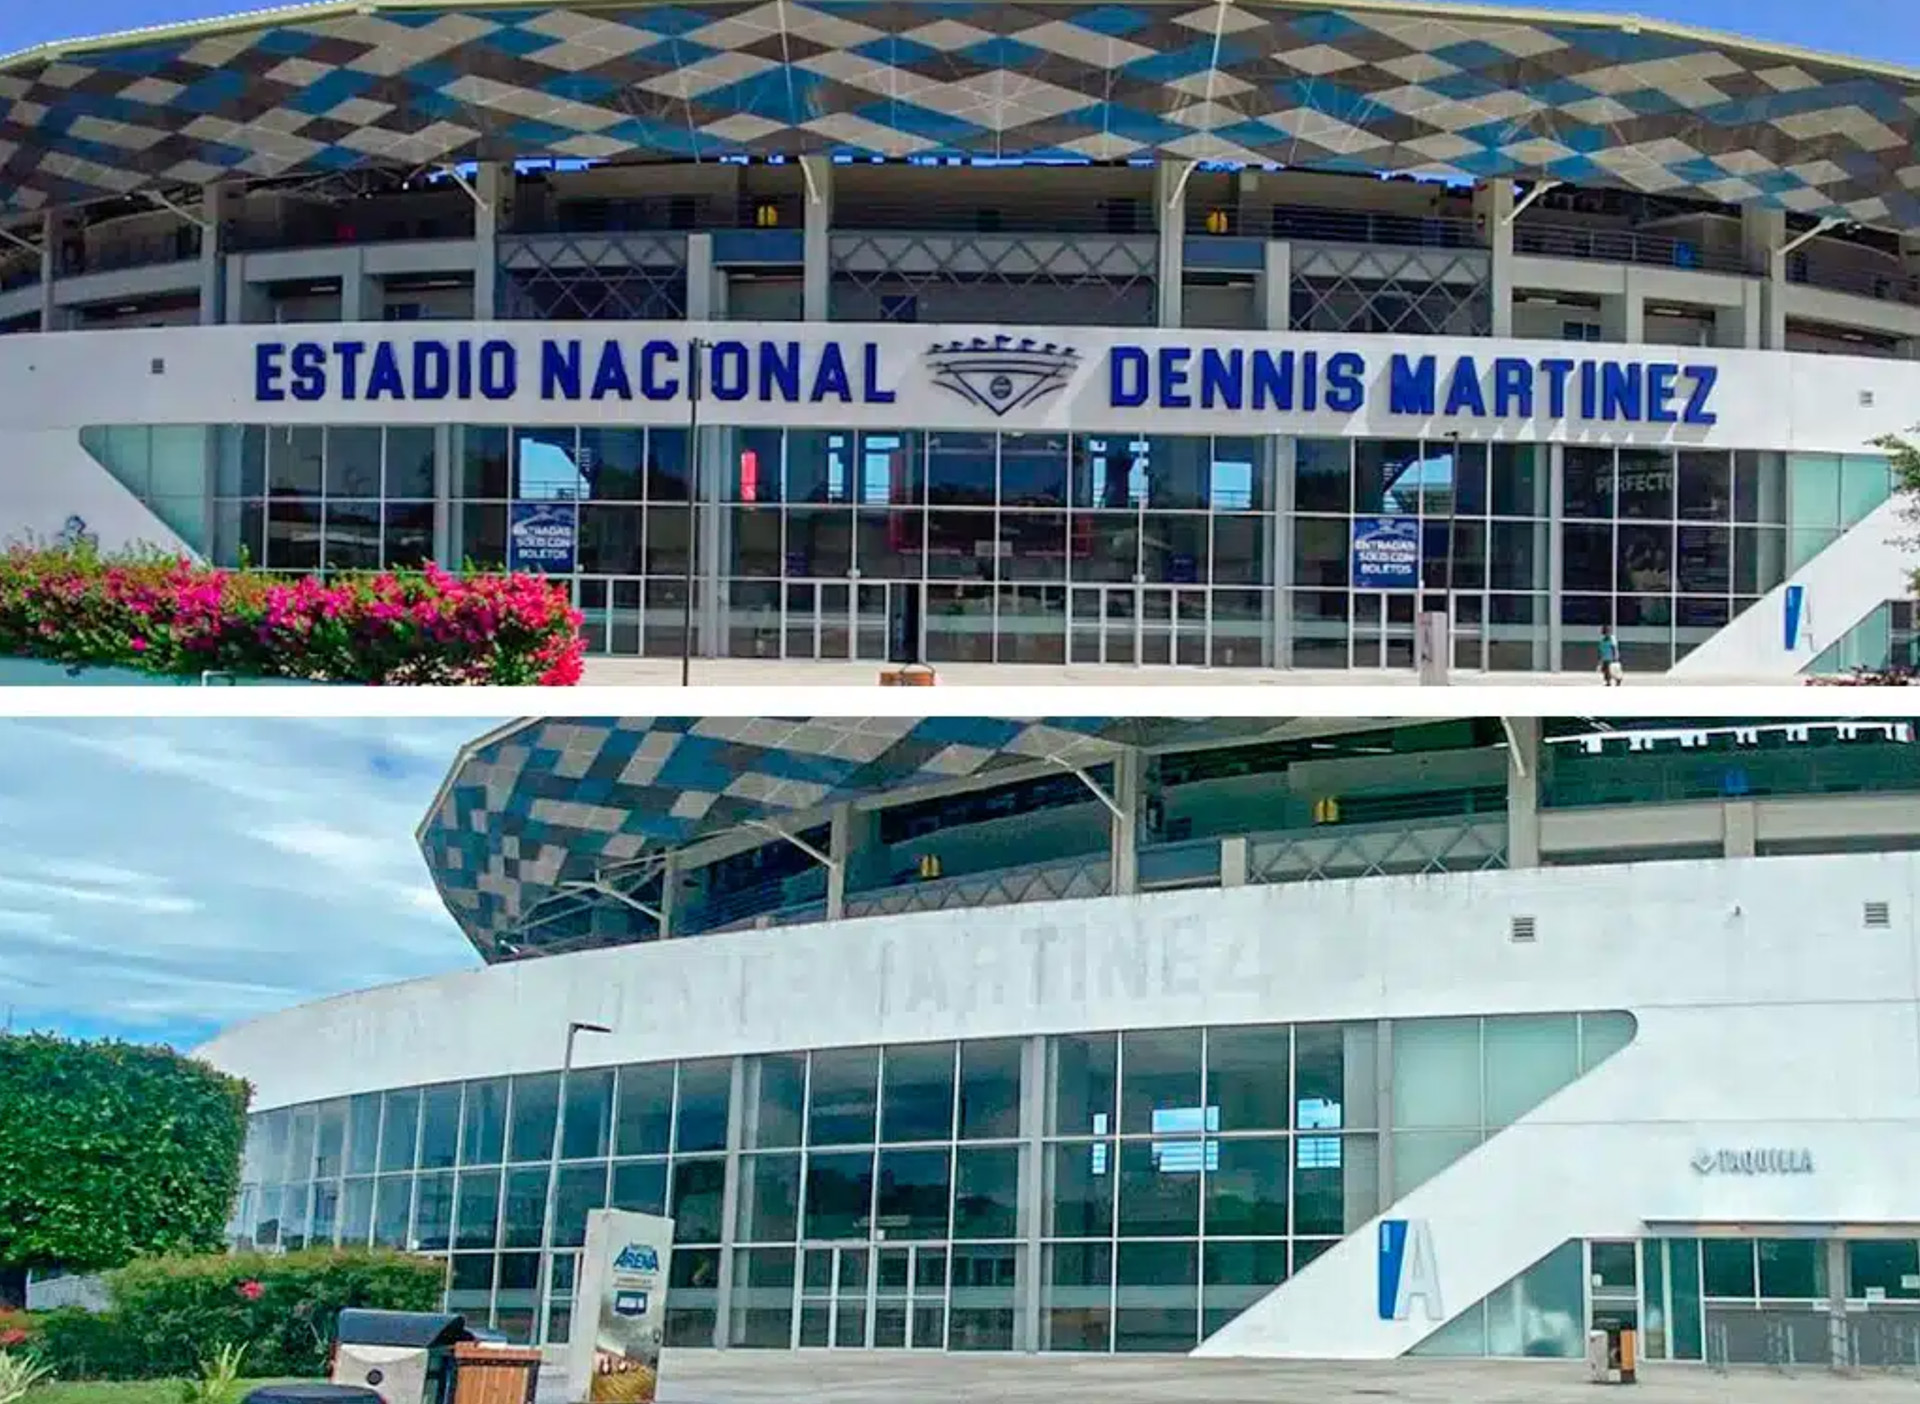 Las letras que identificaban al estadio fueron borradas y el nombre "Estadio Nacional Dennis Martínez" desapareció de la comunicación oficial.